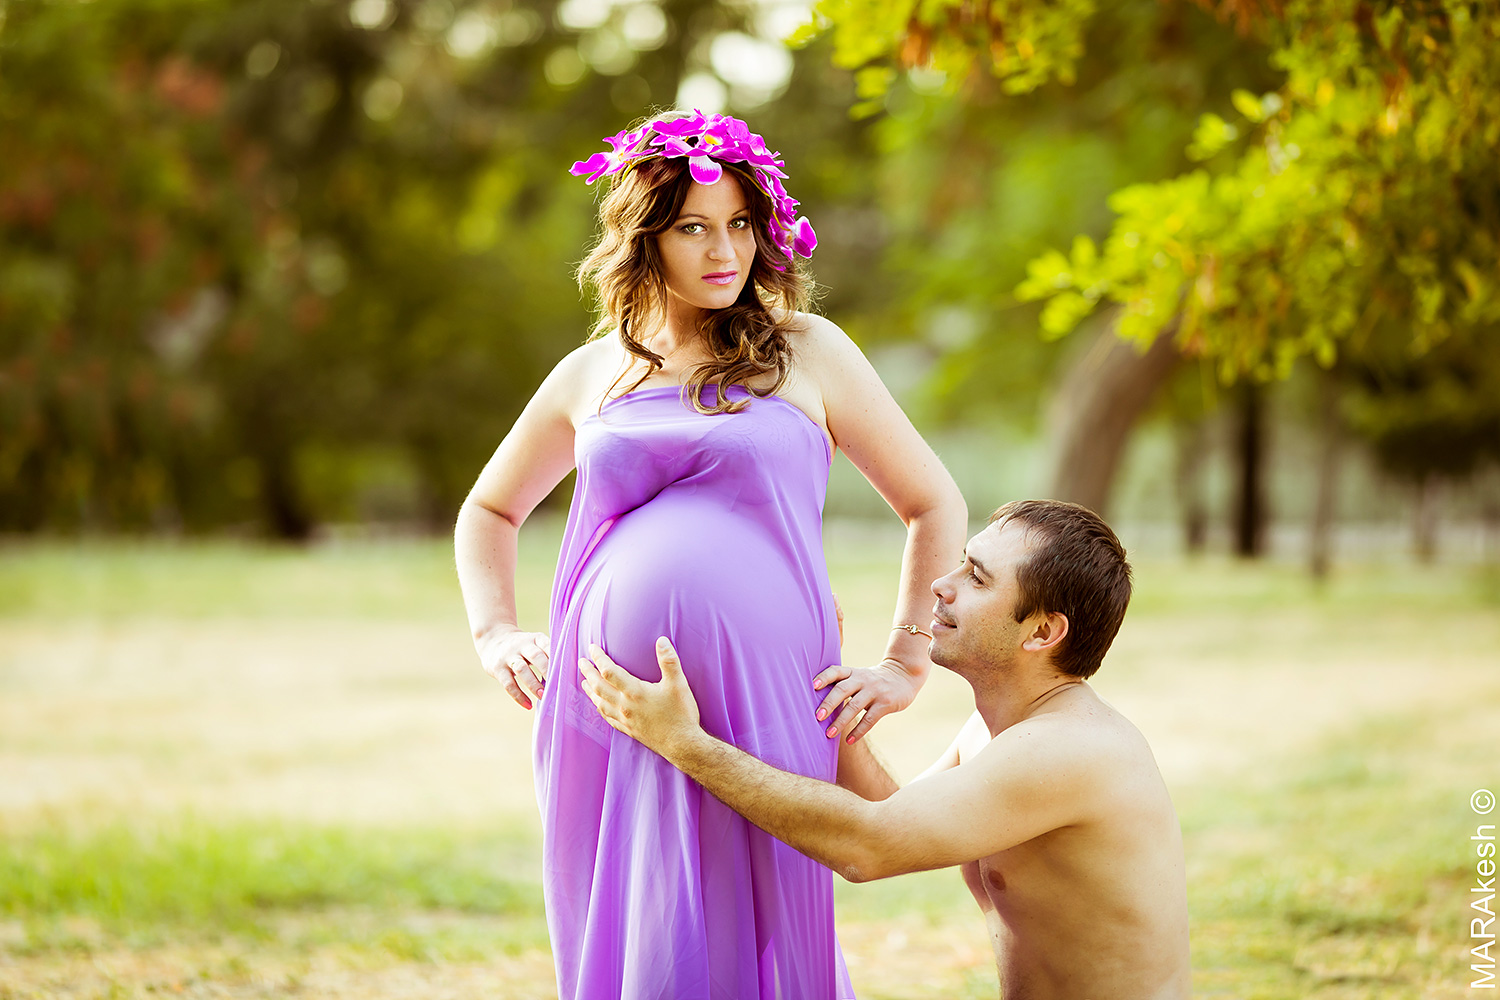 Подборка с беременными. Фотосессия беременных. Беременные фотосессии на природе. Фотосессии с беременными.